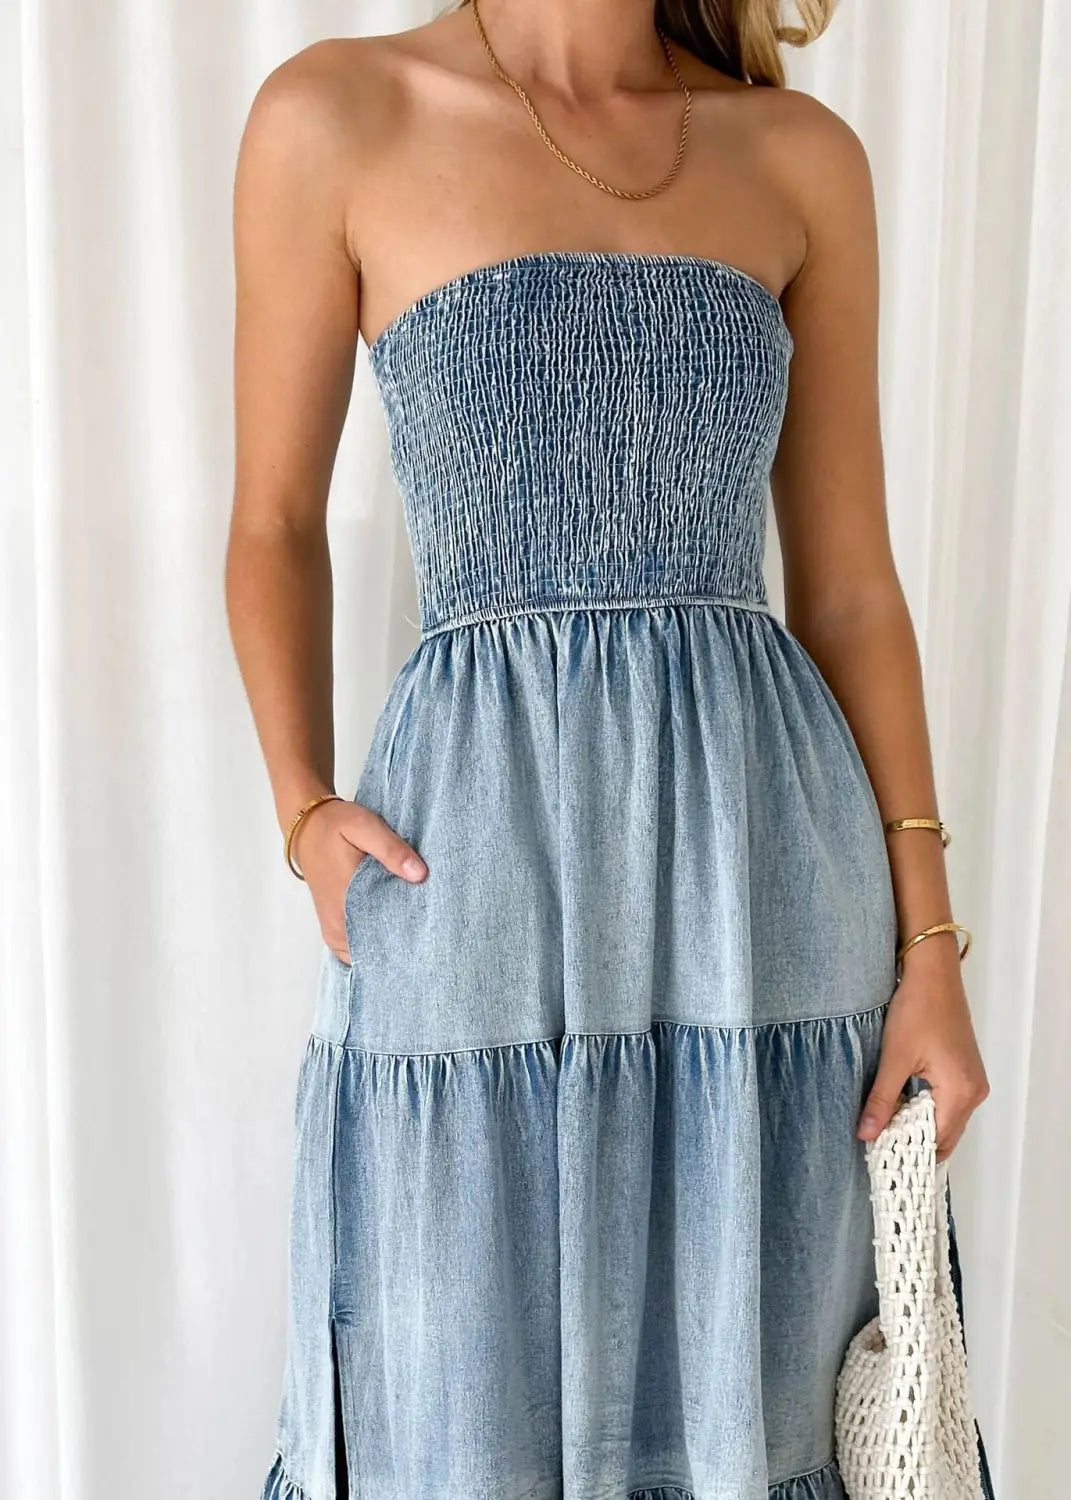 Elegant Strapless Denim Tiered Dress – Summer Chic